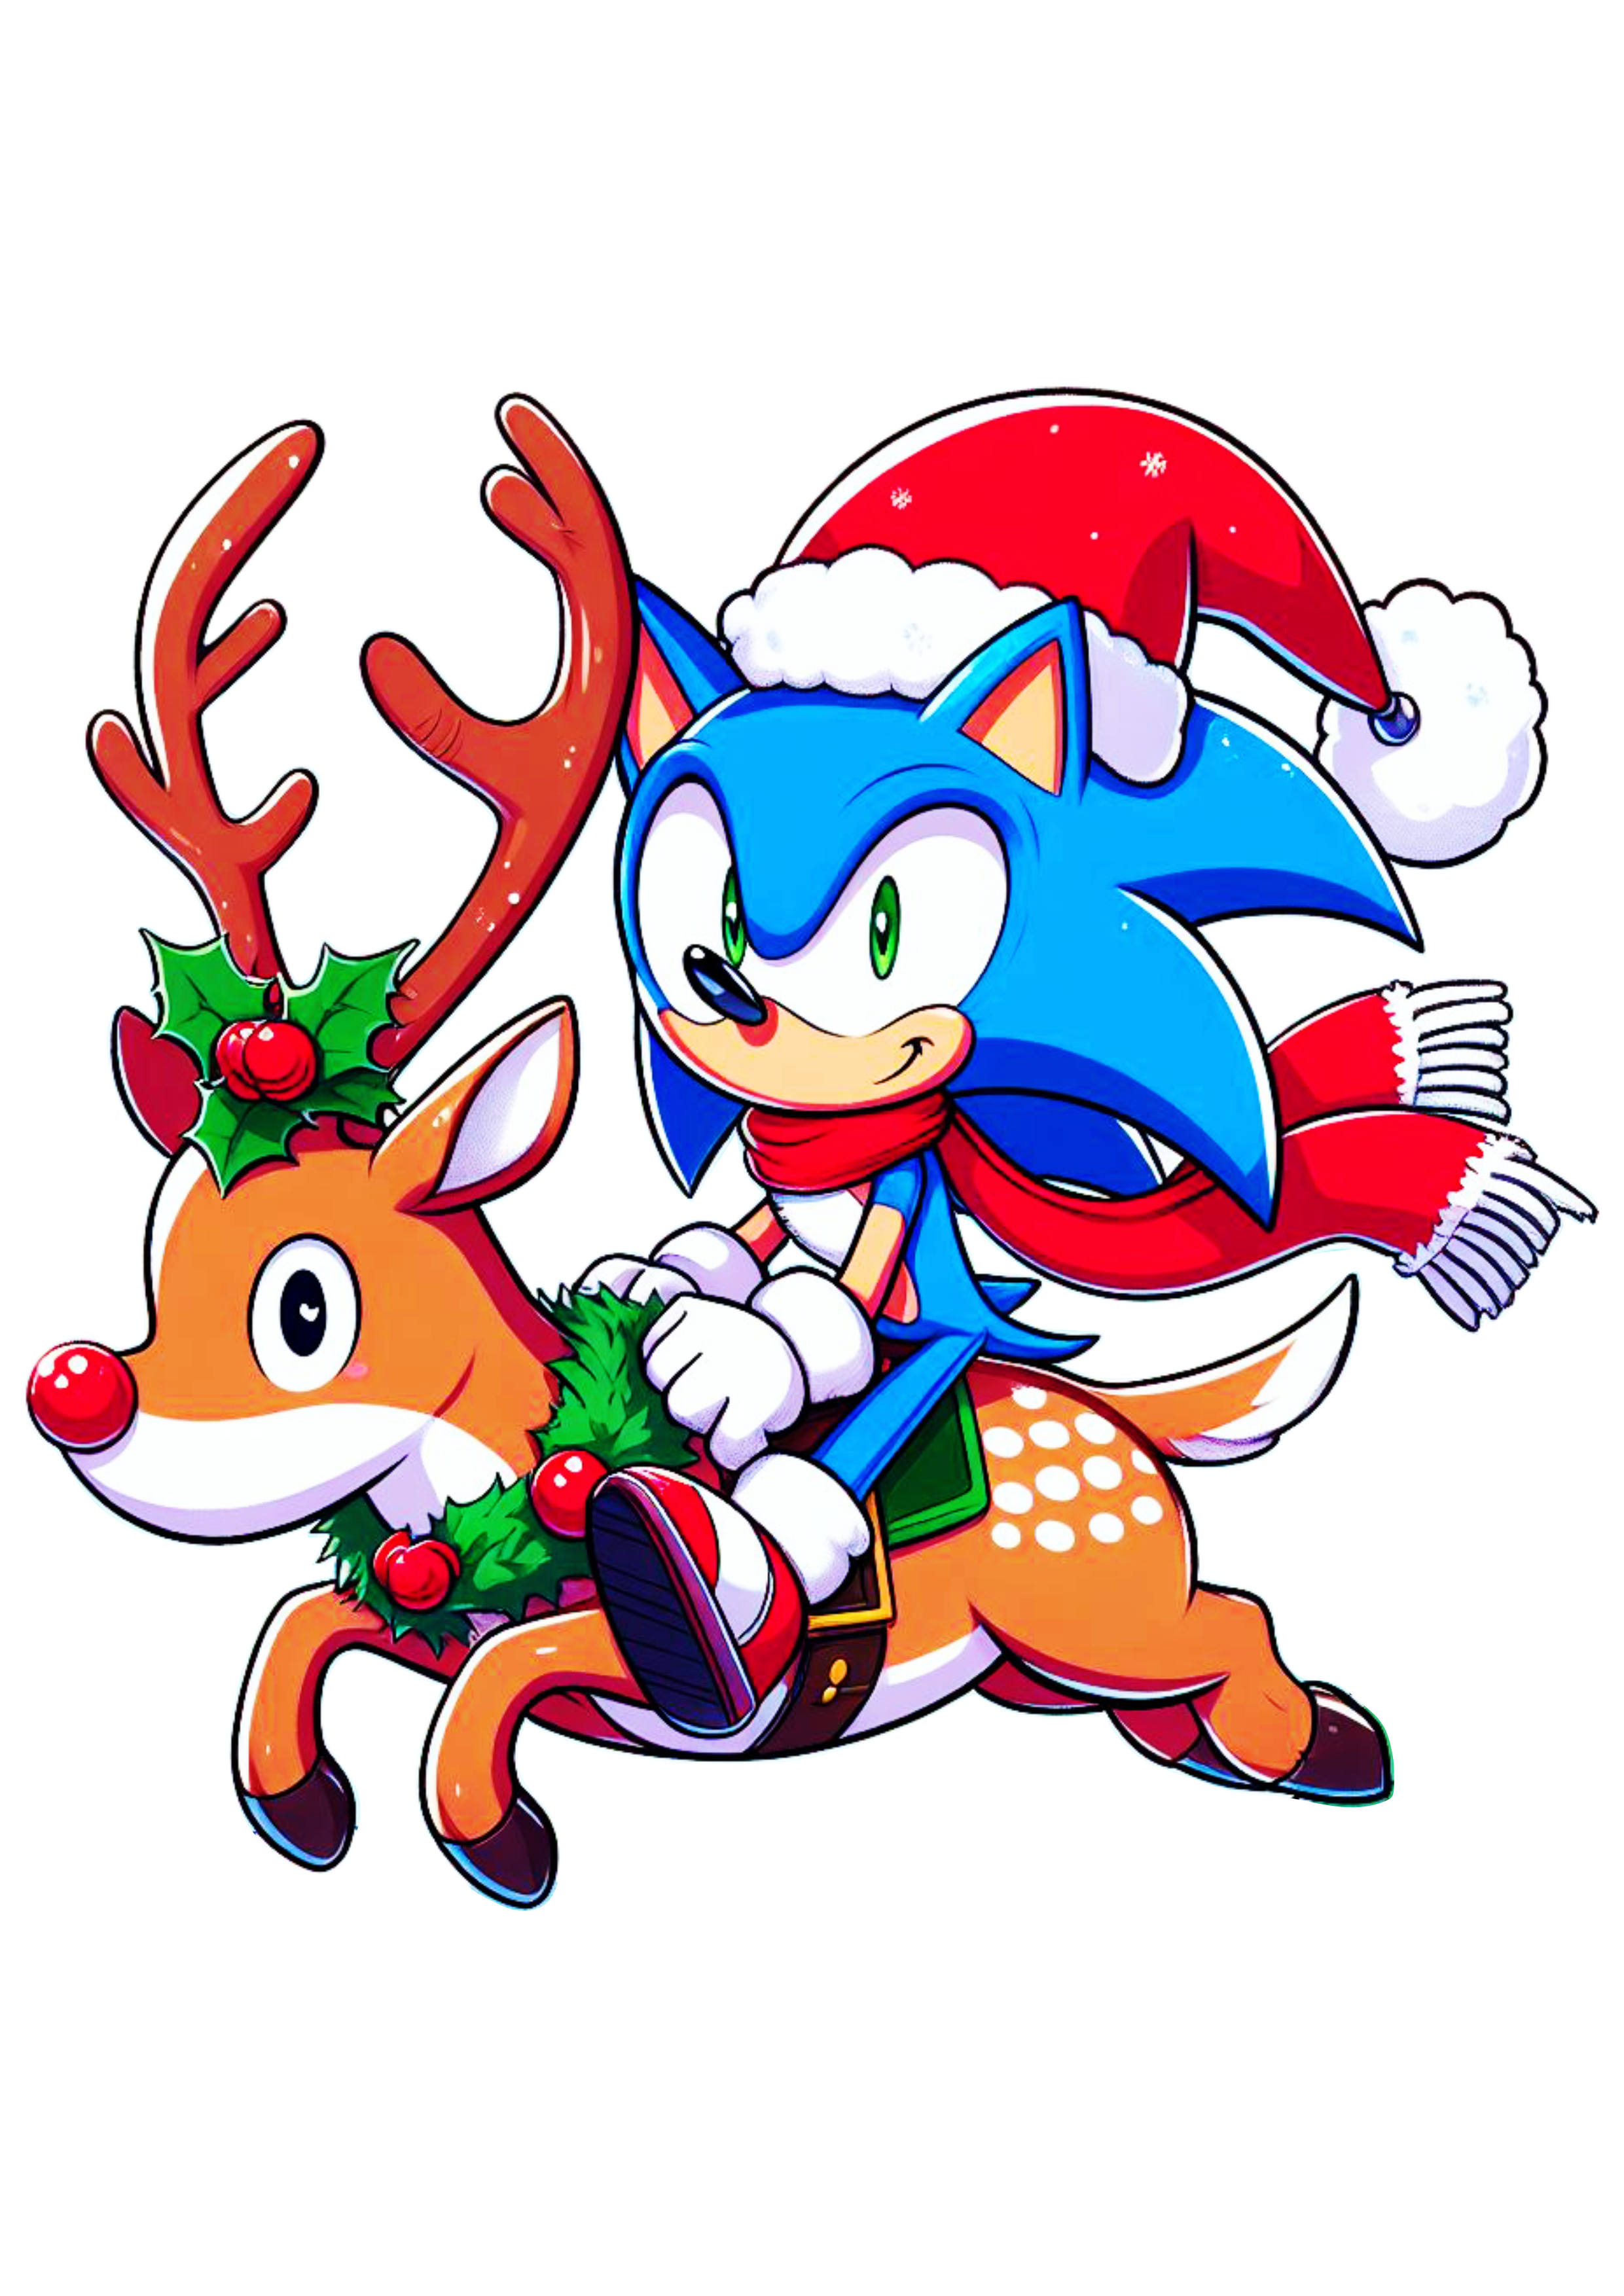 Imagens de natal Sonic the hedgehog e tails com gorro do Papai Noel montado em uma rena ilustração png